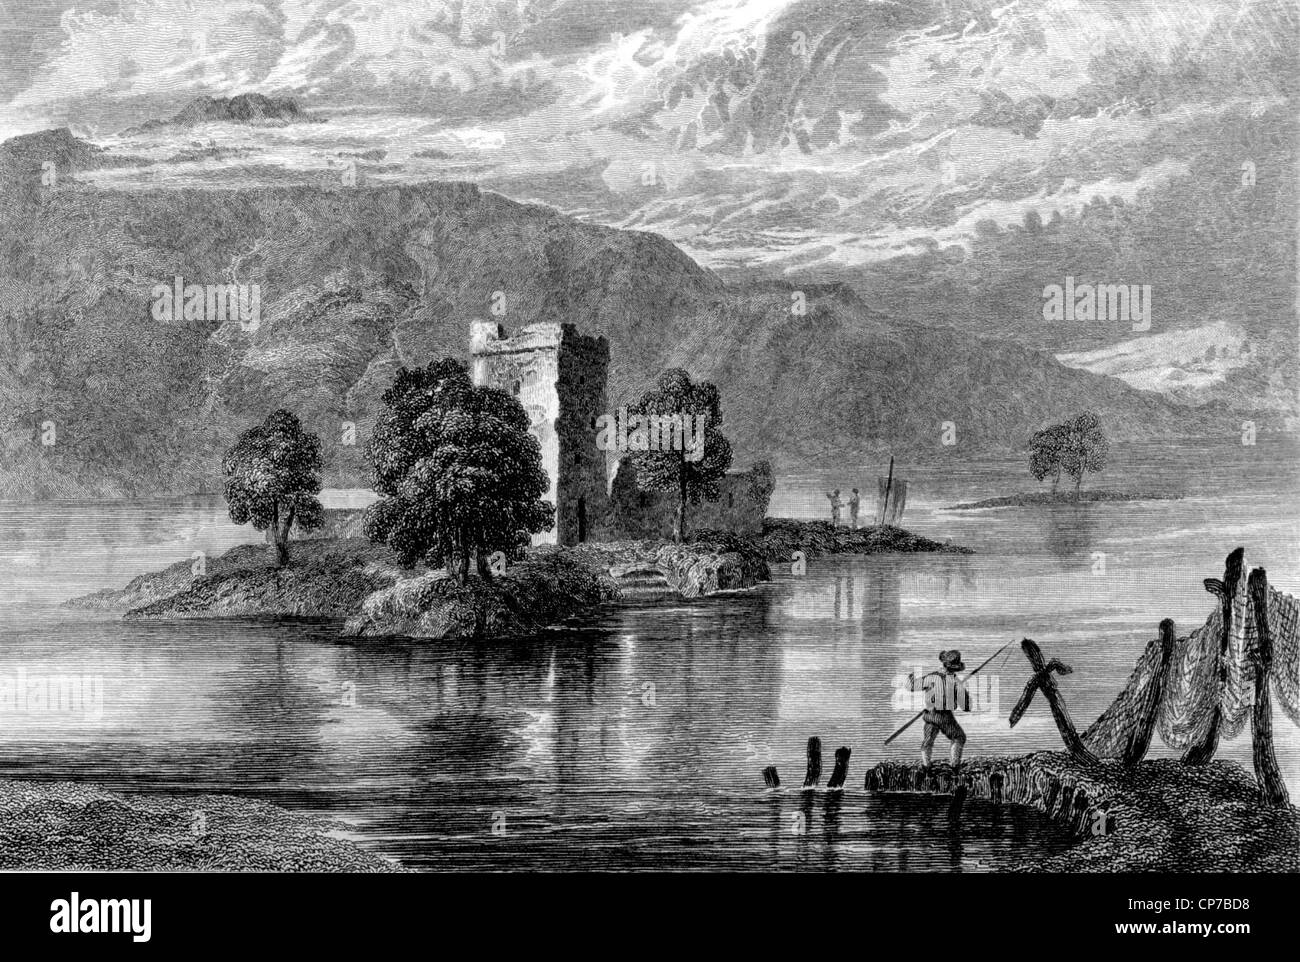 La gravure sur le château de Loch Leven, Perth and Kinross, en Écosse. Gravée par William Miller. Banque D'Images